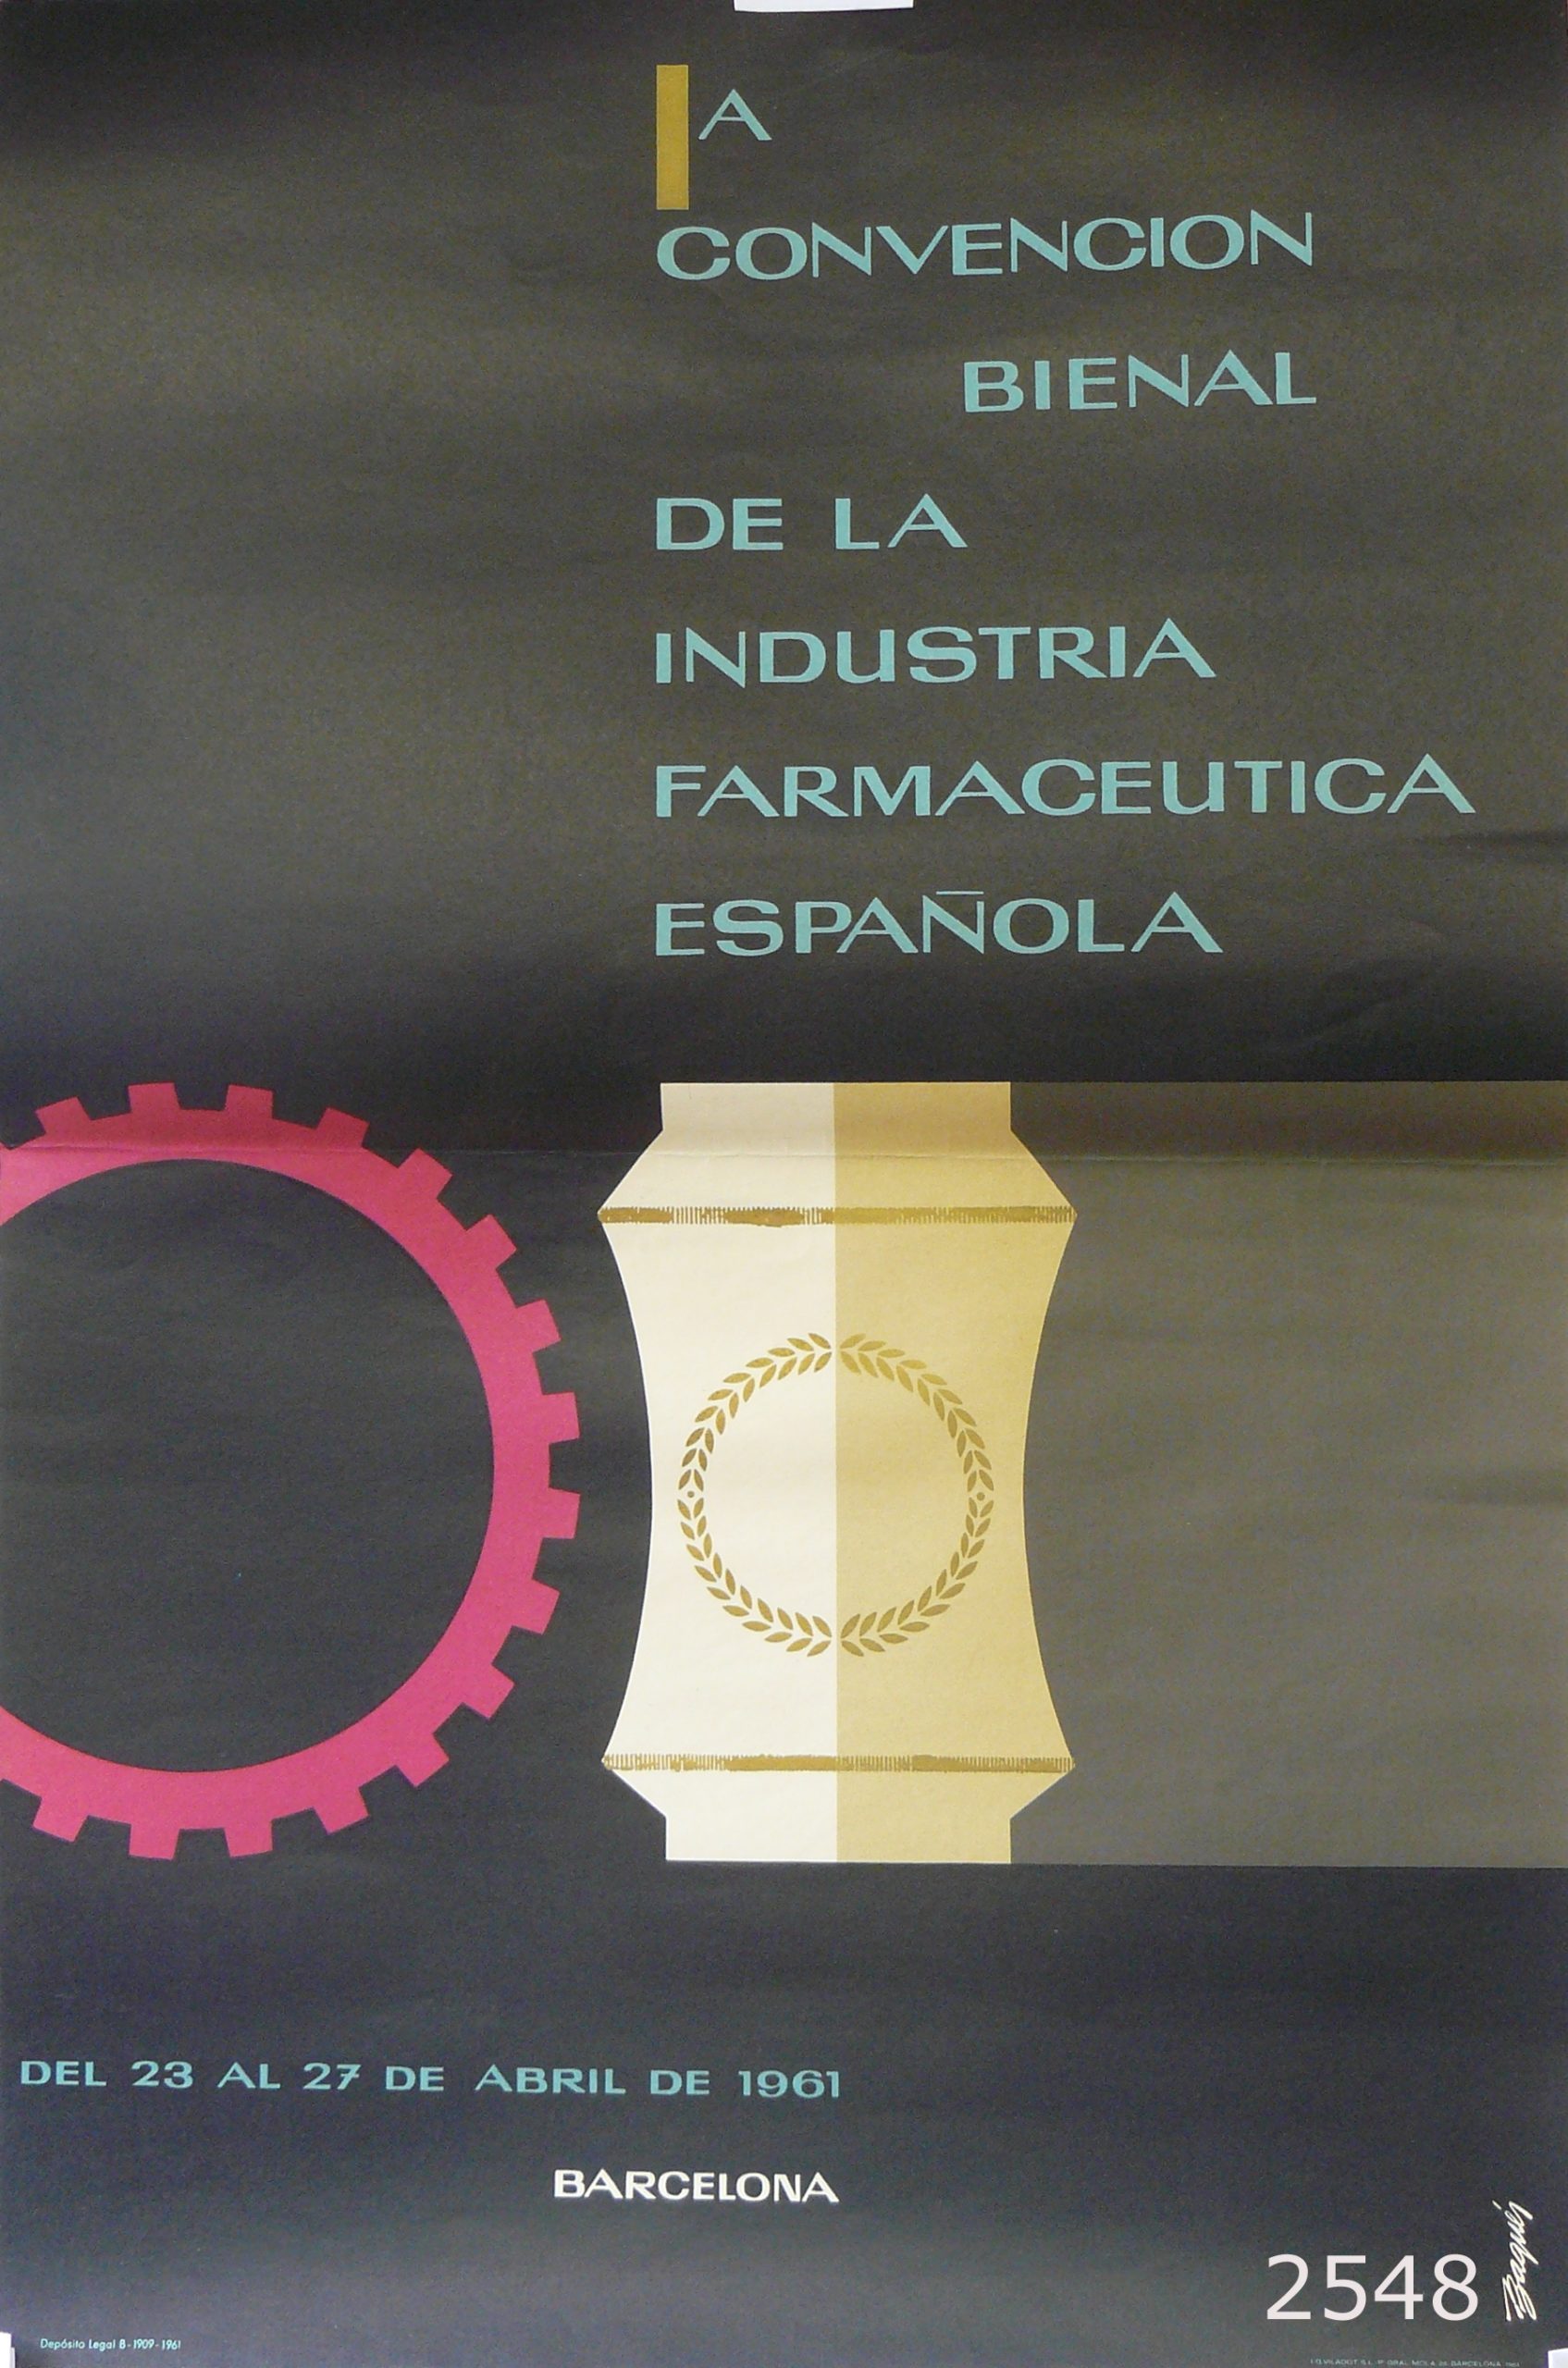 1ª convención bienal de la indústria farmacetica espanyola